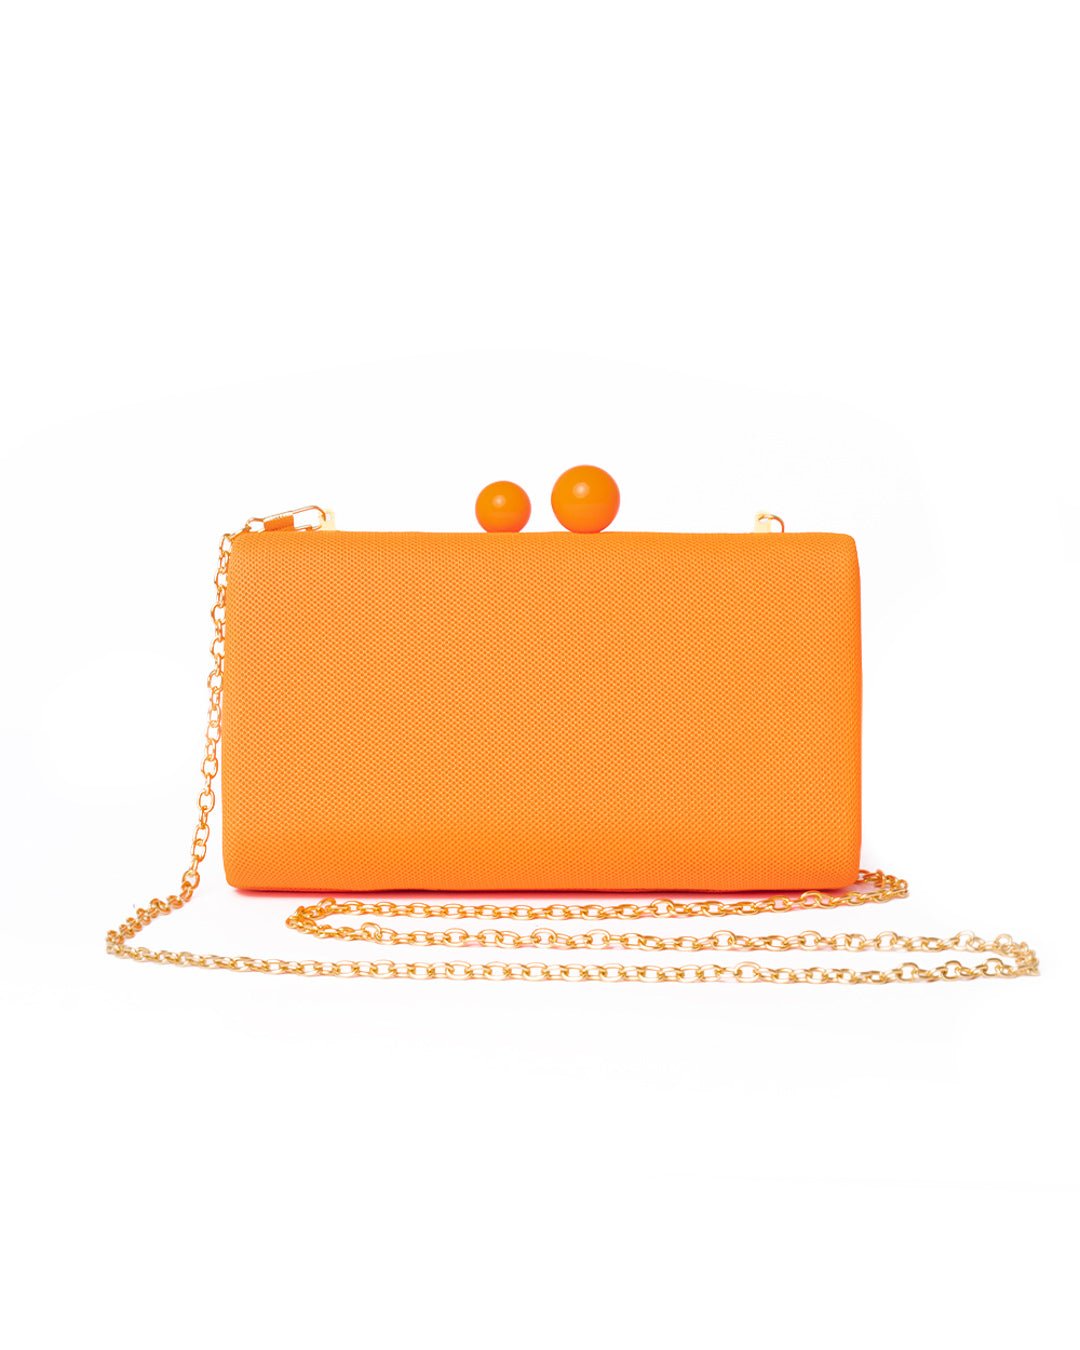 Borsa clutch clic clac tessuto arancio fluorescente - Mya Accessories